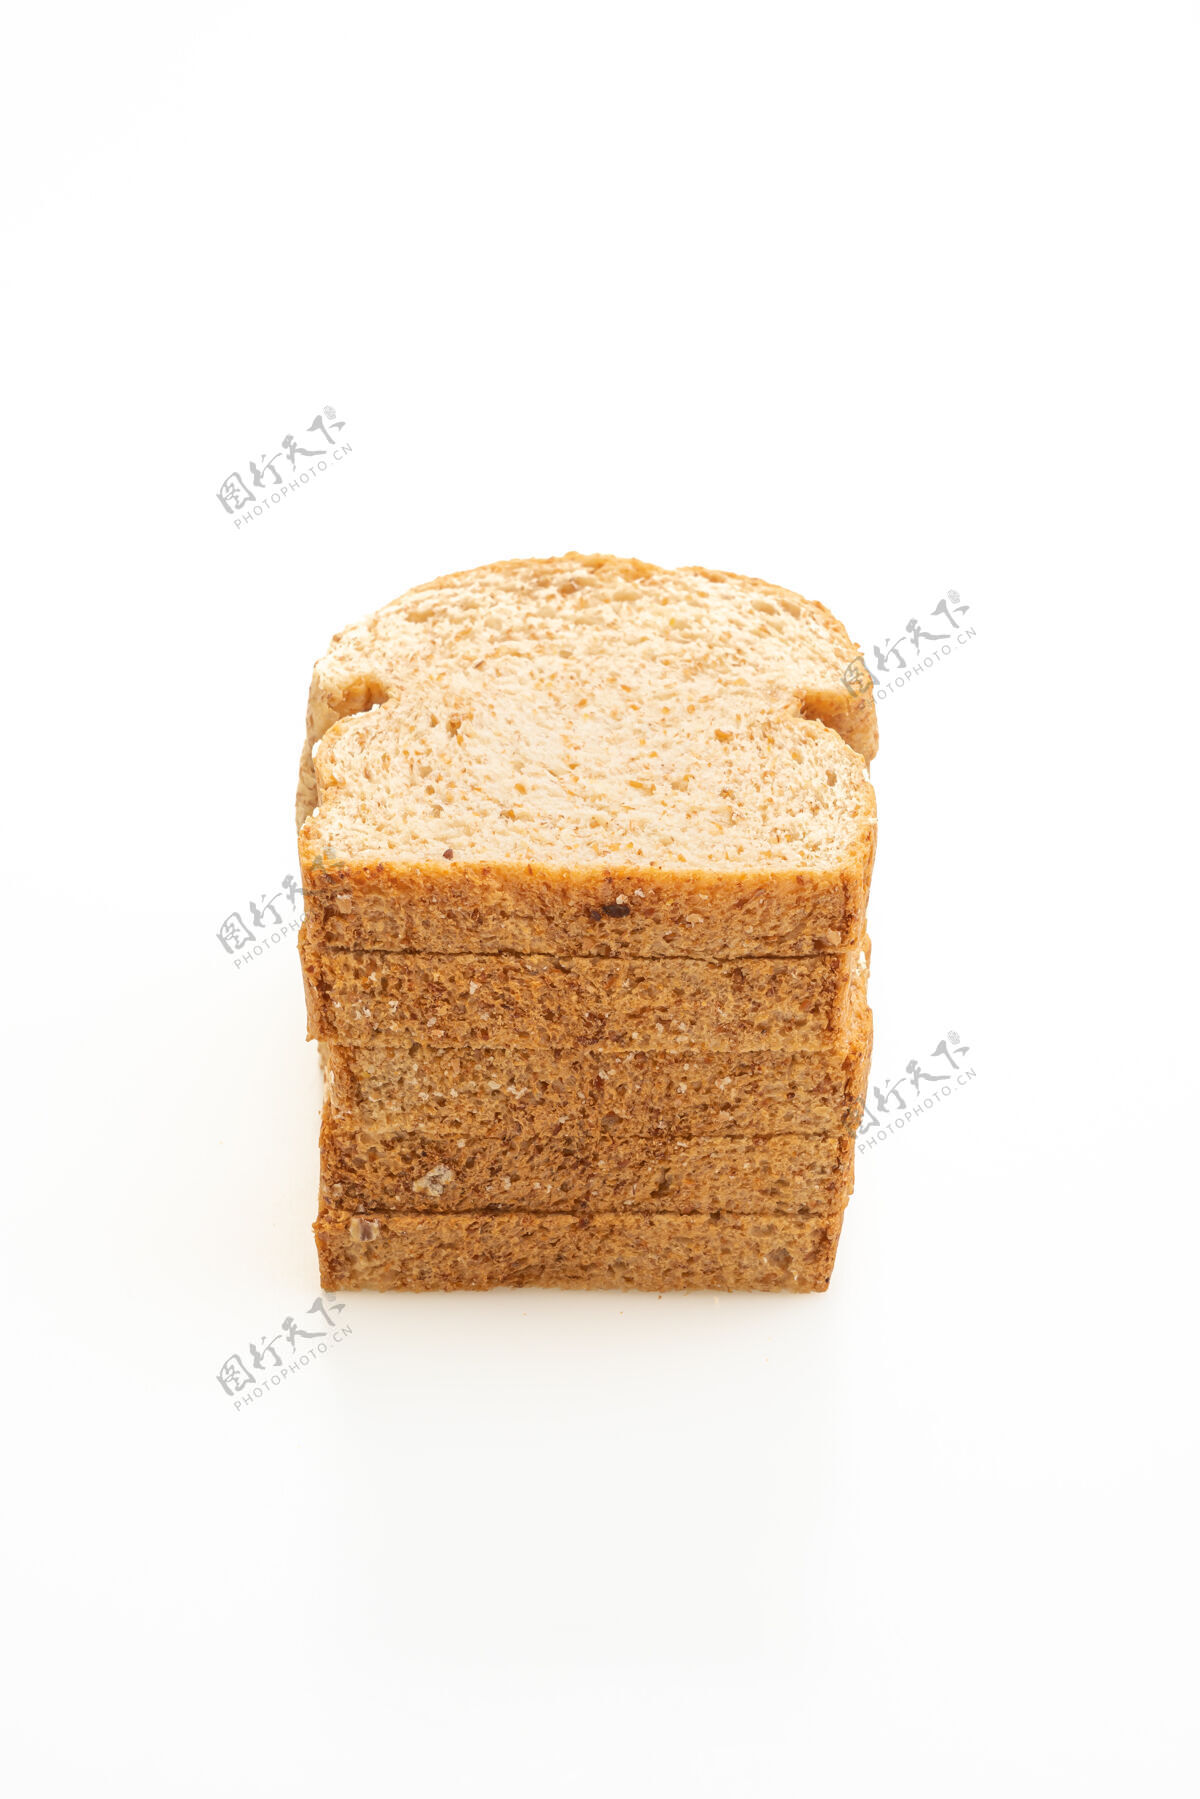 自制全麦切片面包 白面包谷类面包房荞麦